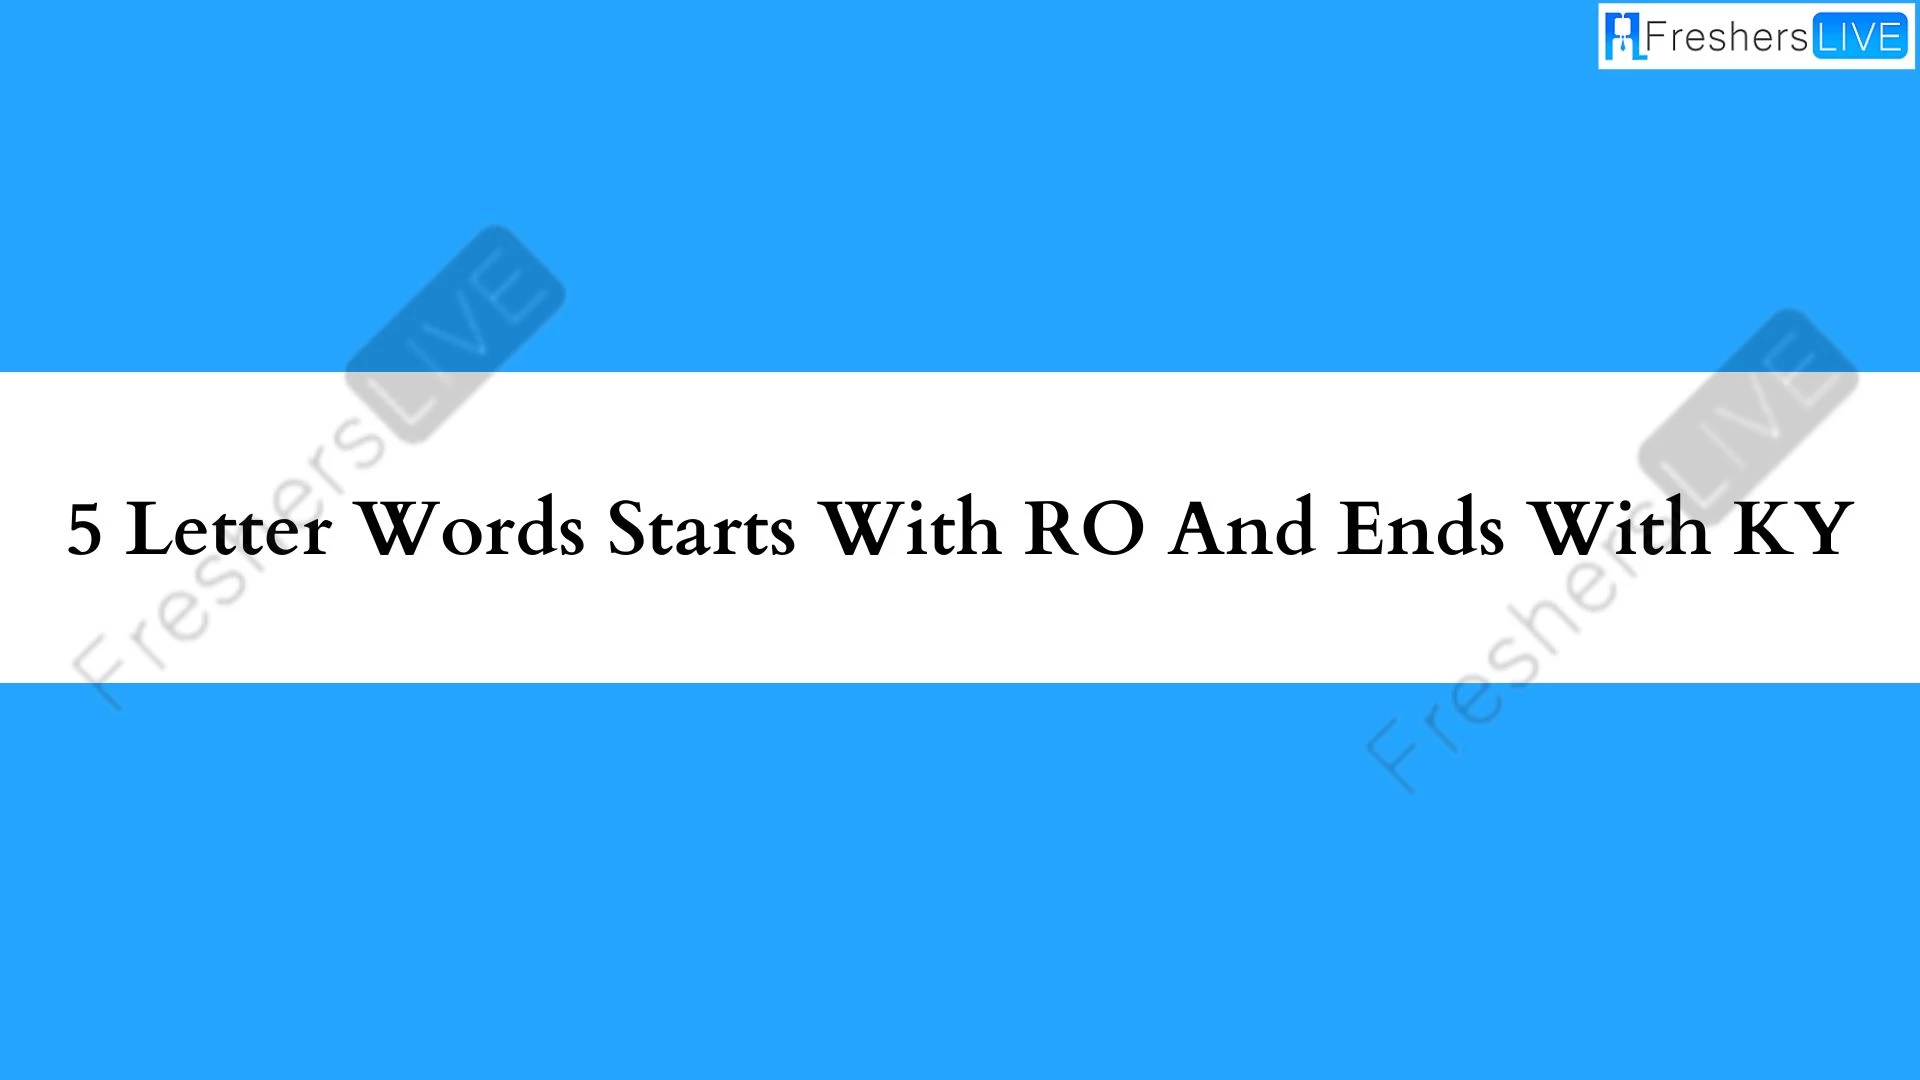 Palabras de 5 letras que empiezan con RO y terminan con KI.